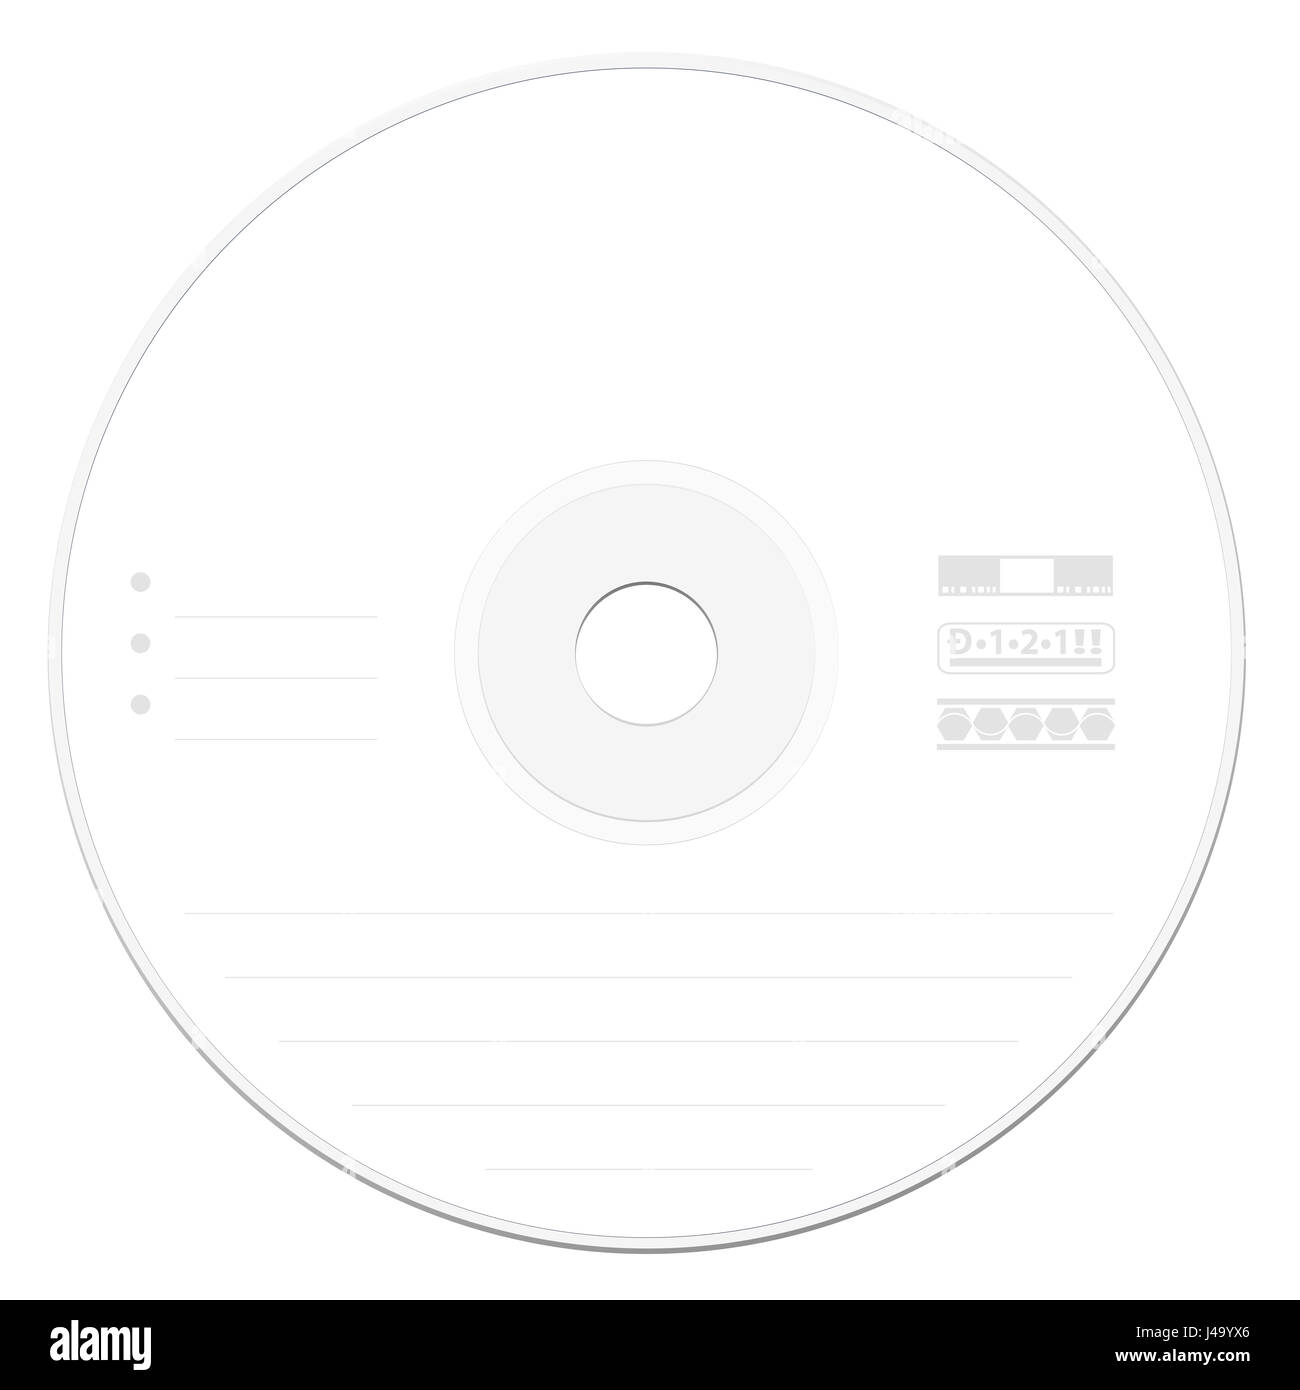 CD mit leeres Etikett Vorlage - illustrierte Compact Disc oder digital versatile Disc - Abbildung auf weißem Hintergrund. Stockfoto